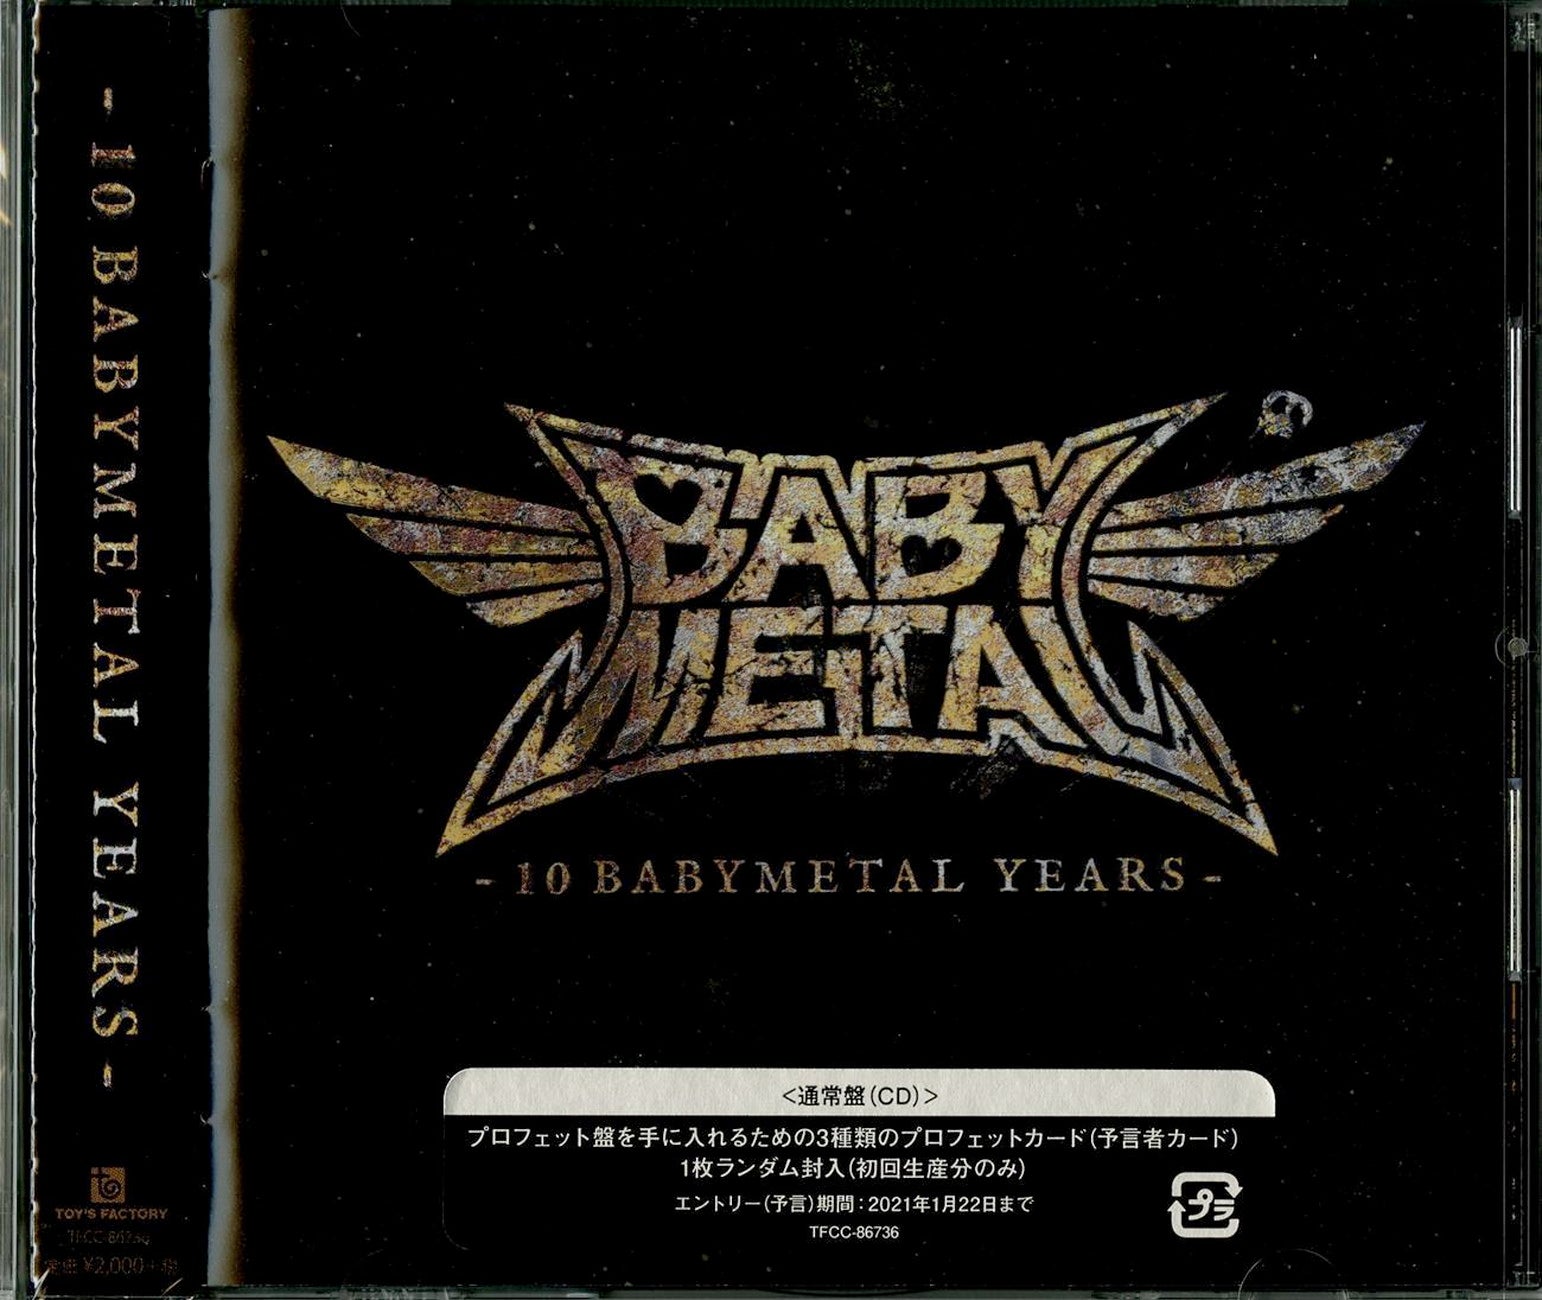 Babymetal - 10 Babymetal Years - Japan CD – CDs Vinyl Japan Store 